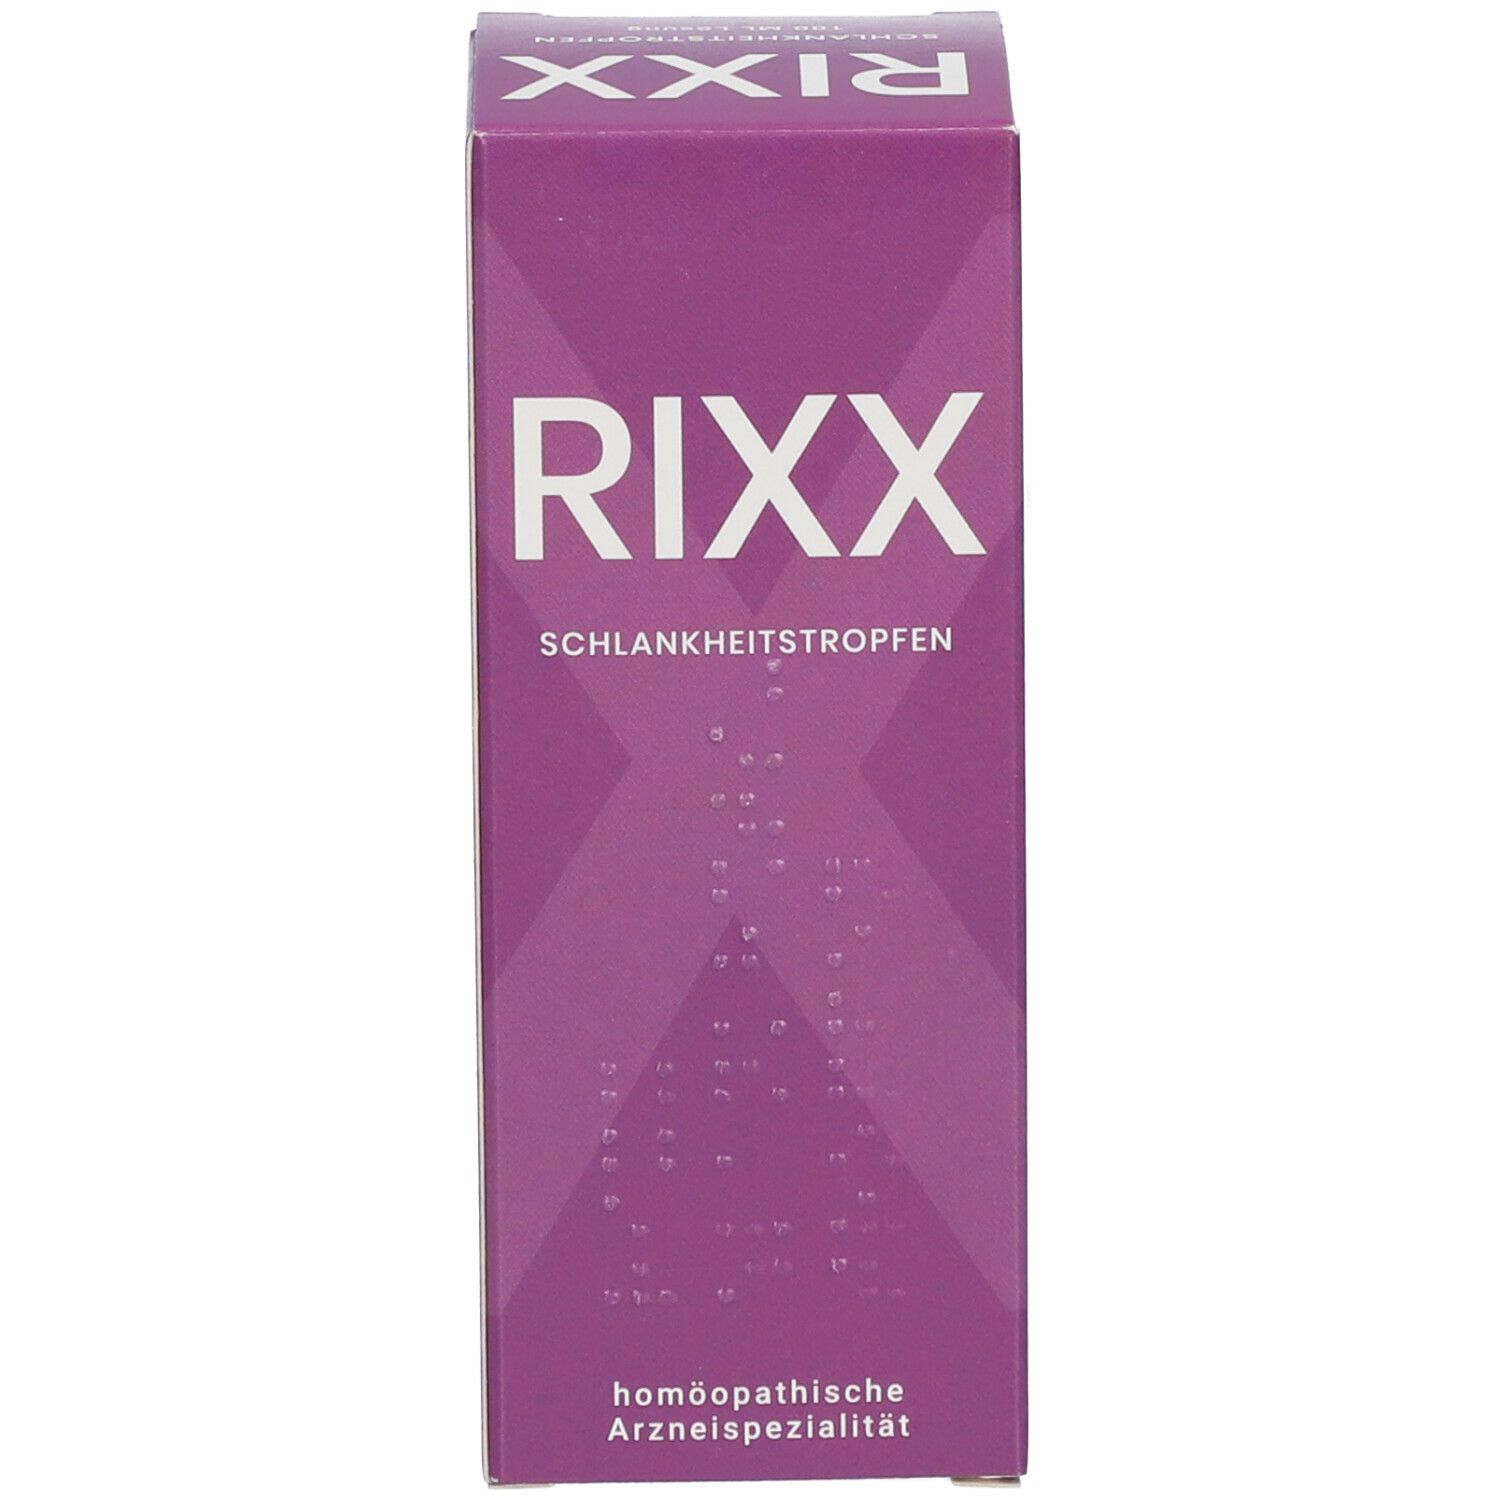 RIXX Schlankheitstropfen